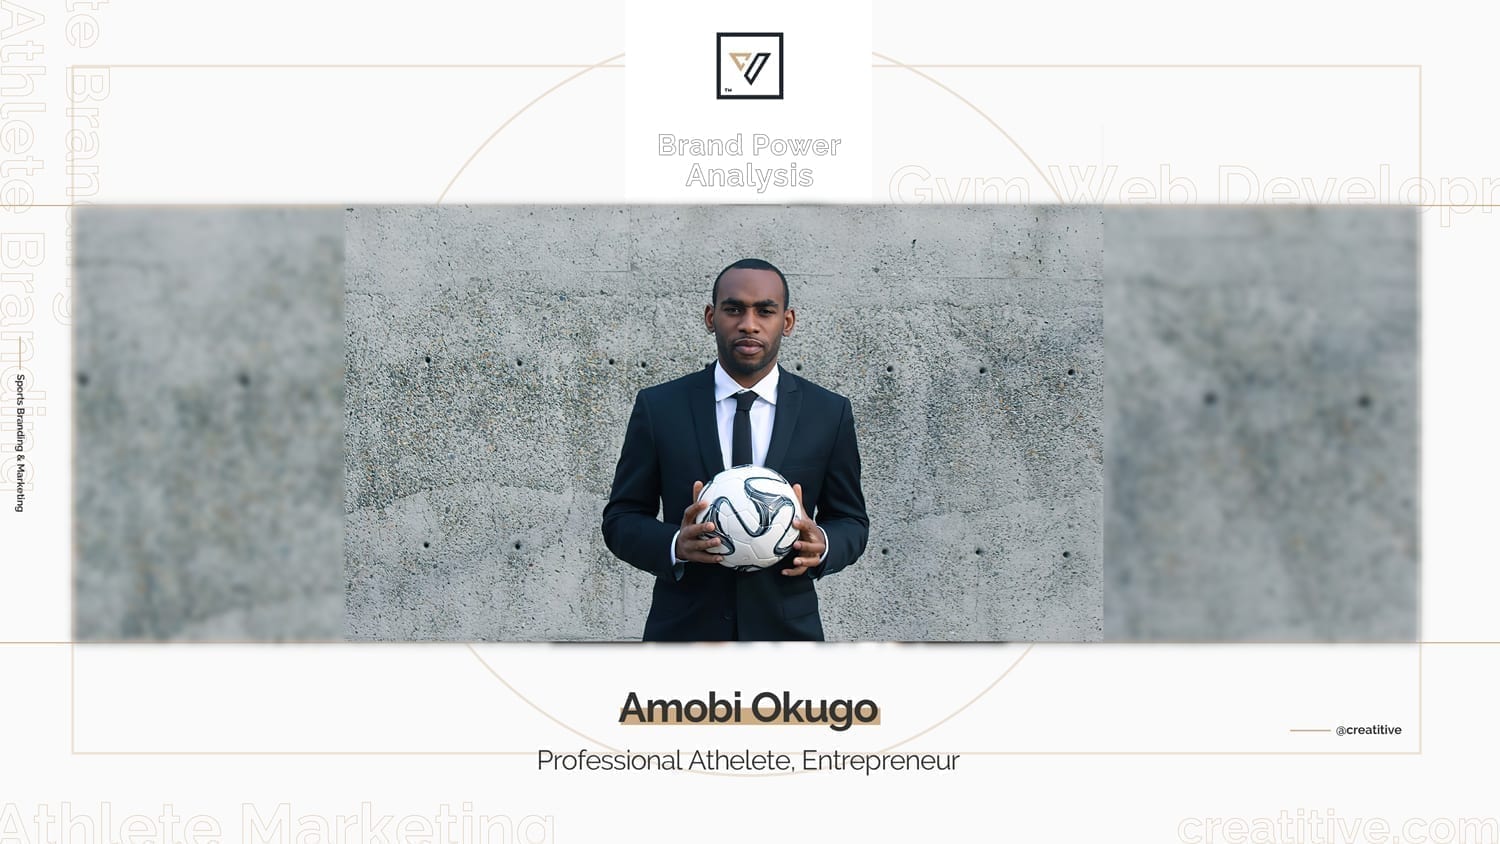 Brand Power Analysis: Amobi Okugo MLS Professional Athlete & Entrepreneur